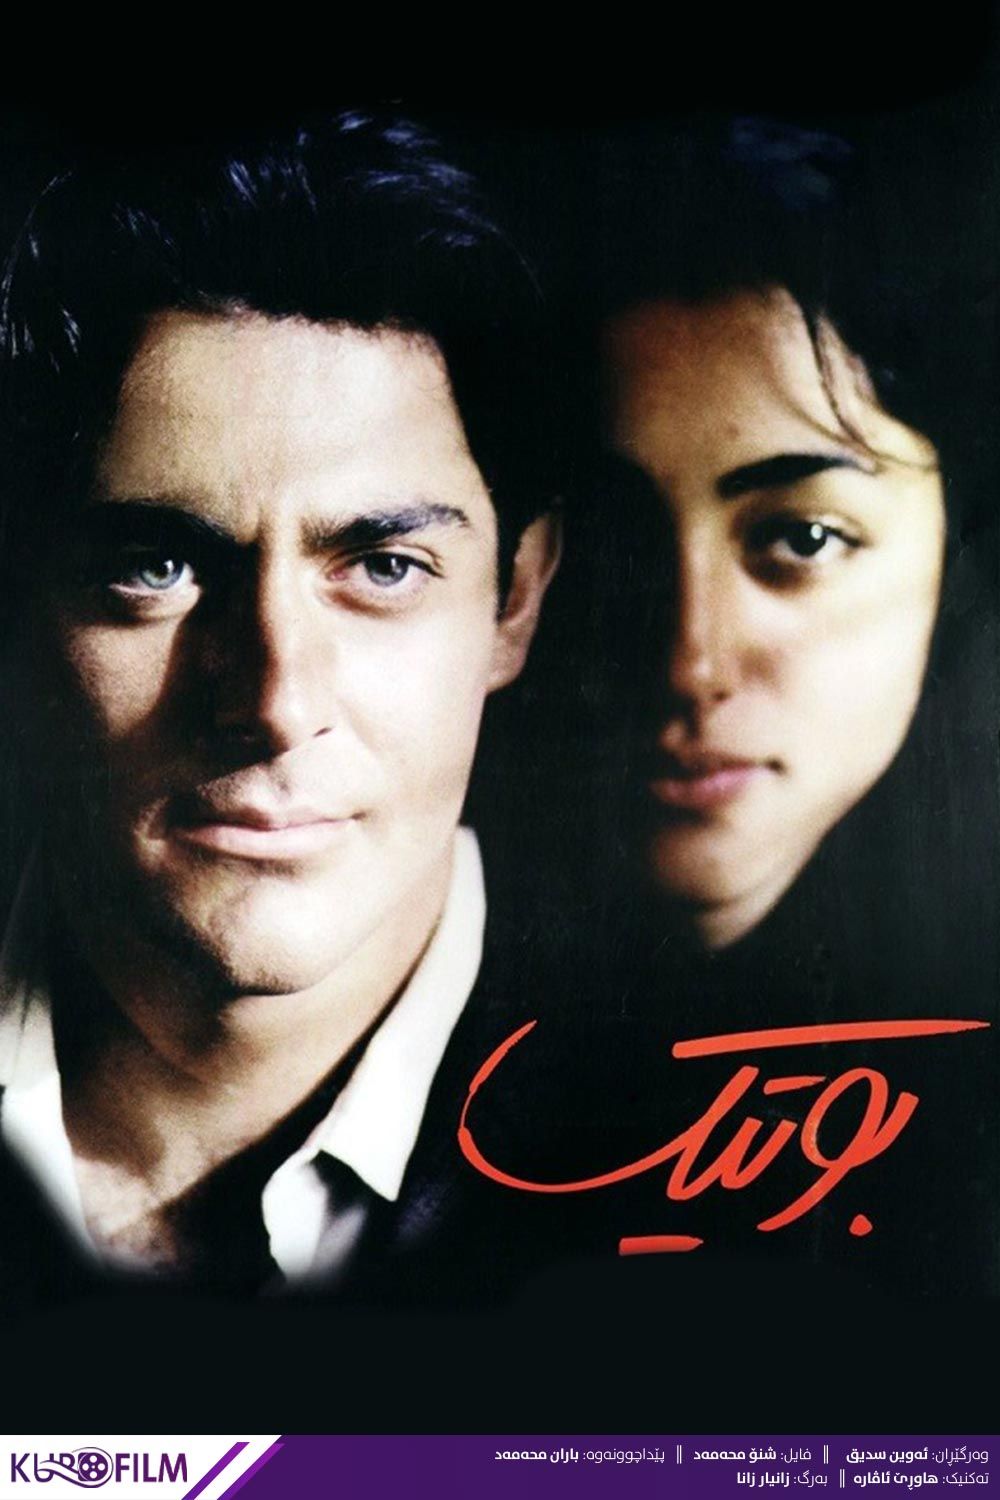 بوتیک (2003)